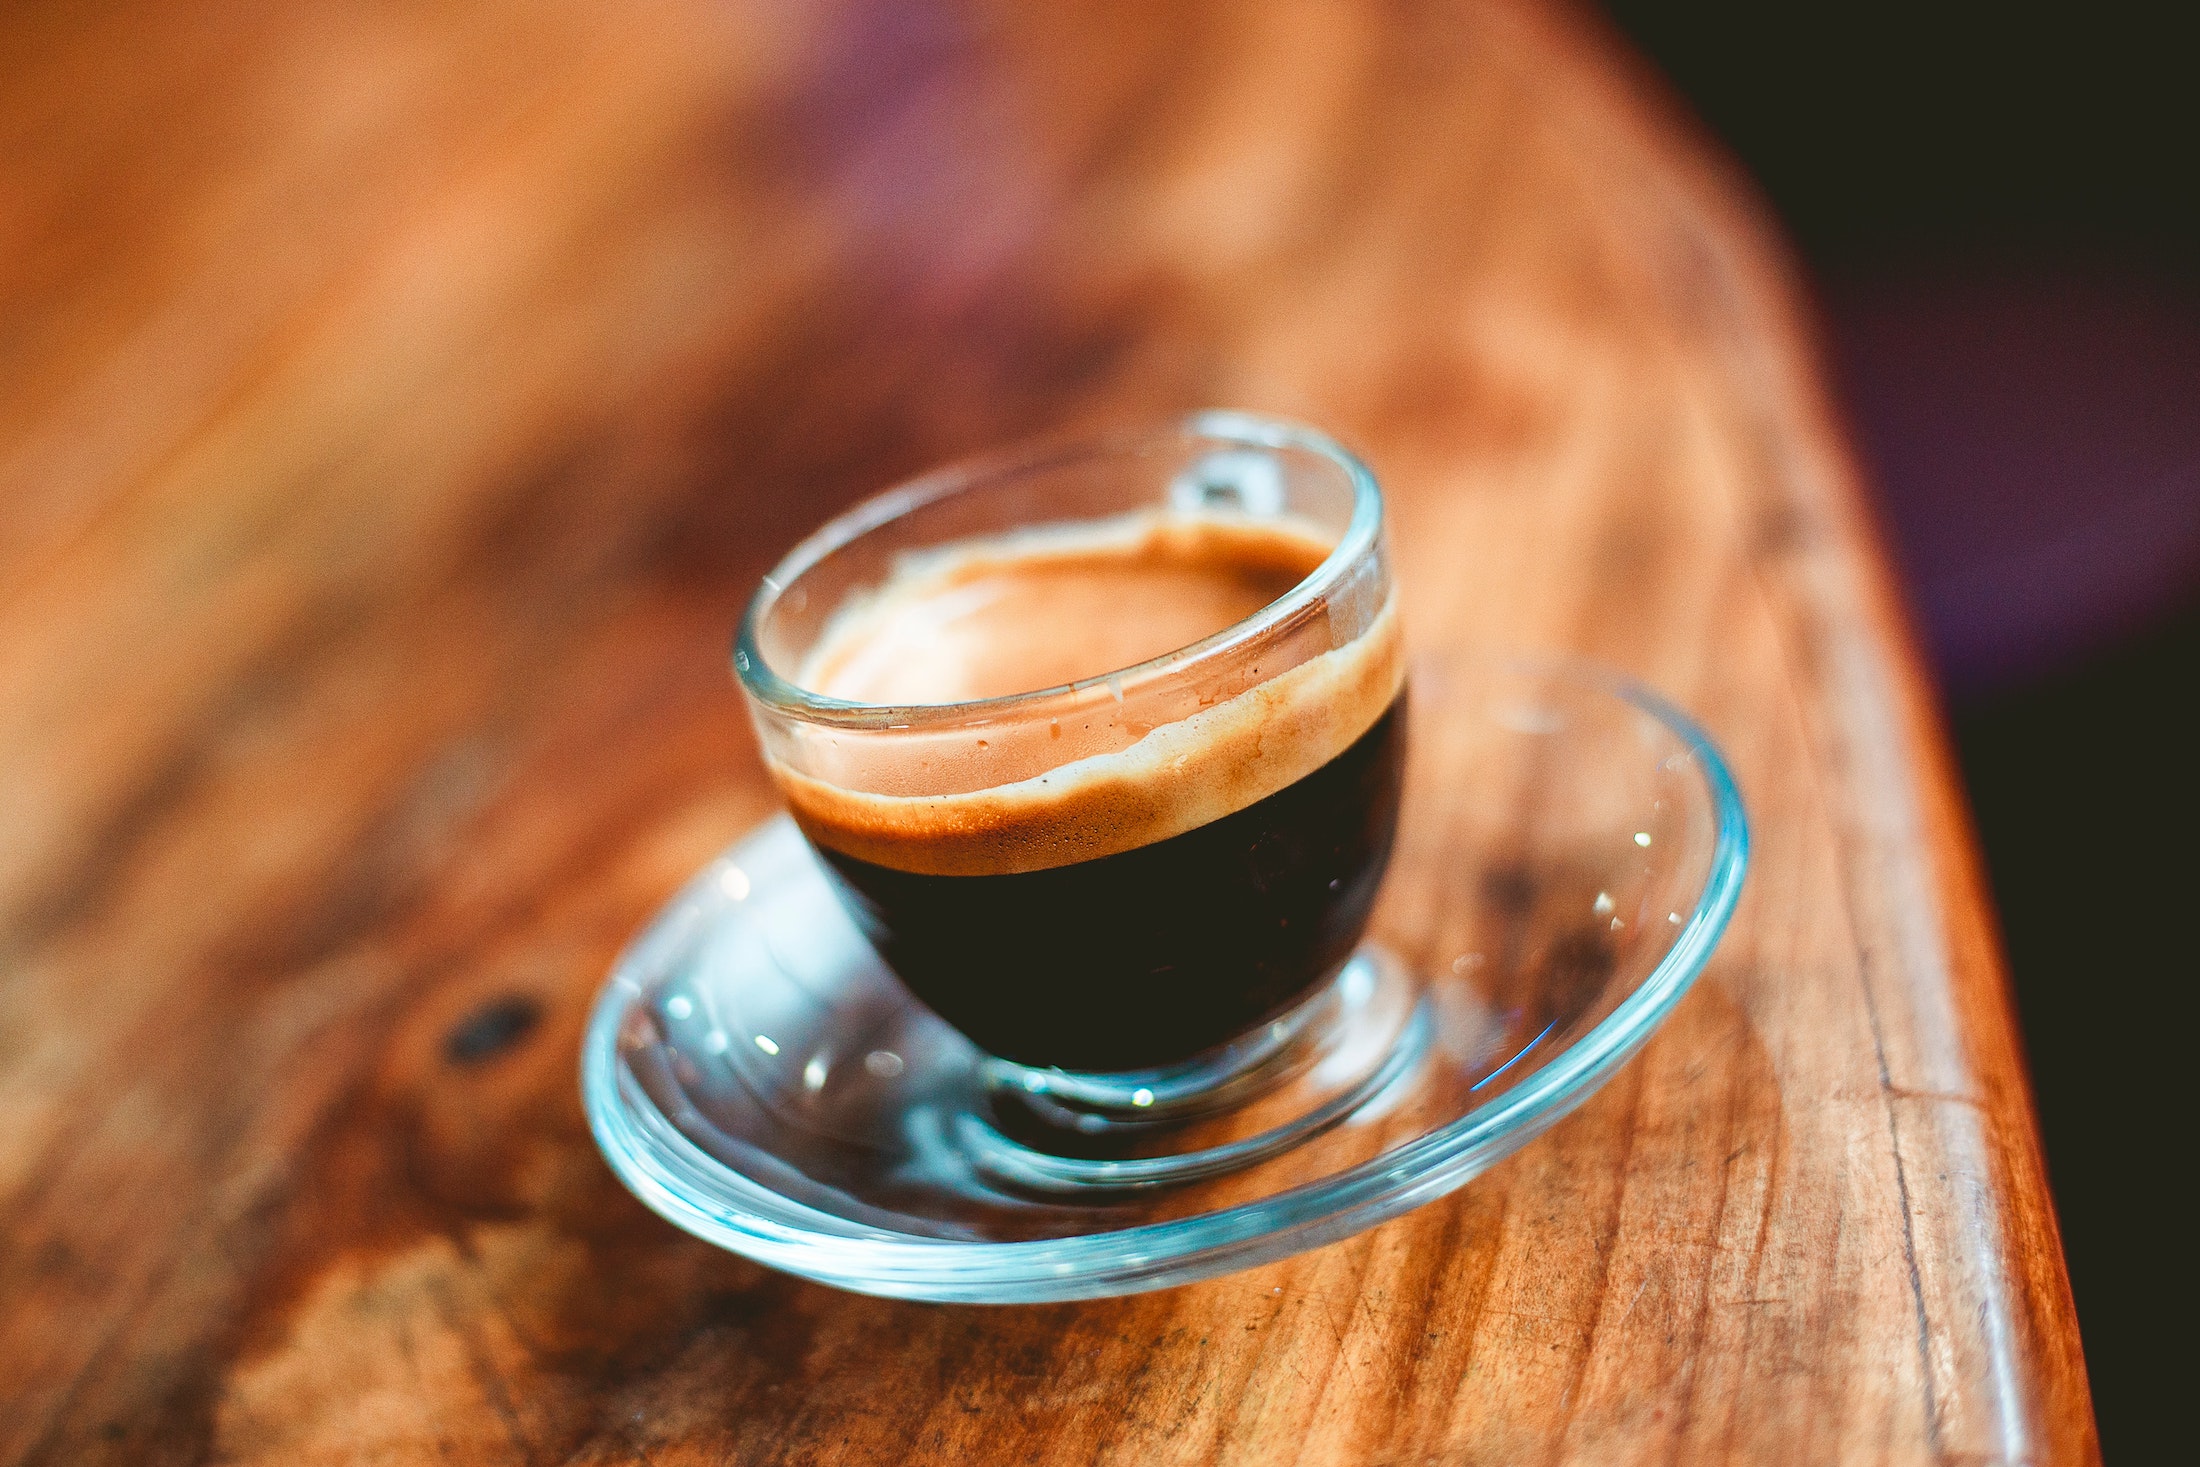 Eine gläserne Espresso Tasse auf einem Holztisch. Man erkennt gut die dunkle Kaffee Flüssigkeit und die nussbraune Crema auf dem Kaffee.